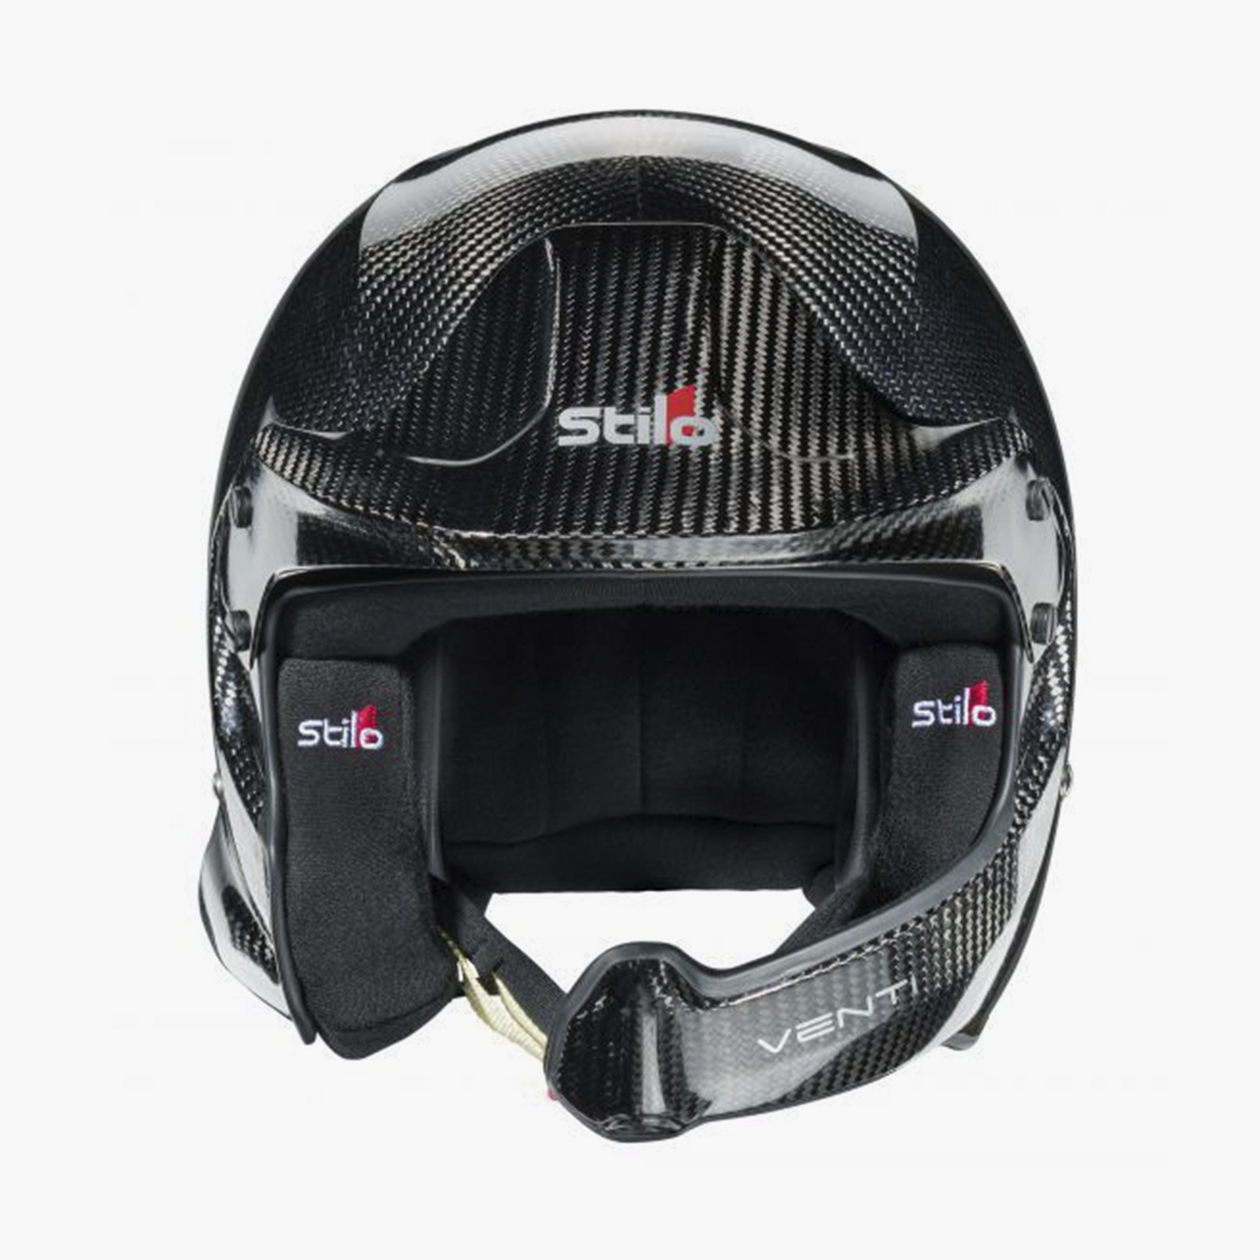 У некоторых шлемов, например Stilo Venti, очень толстый энергопоглощающий слой. Источник: stilohelmets.com